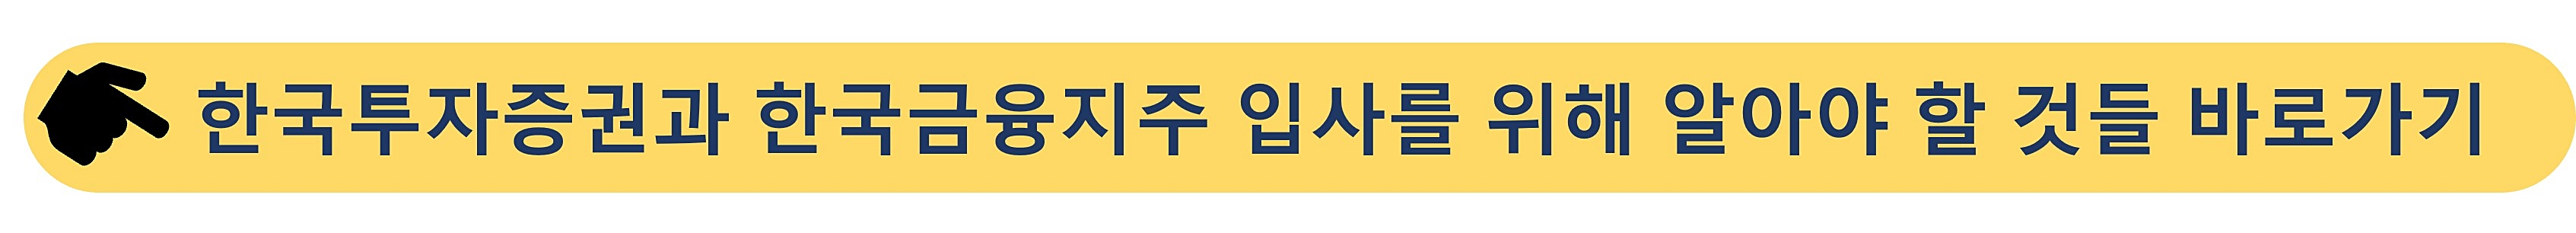 한국투자증권-한국금융지주